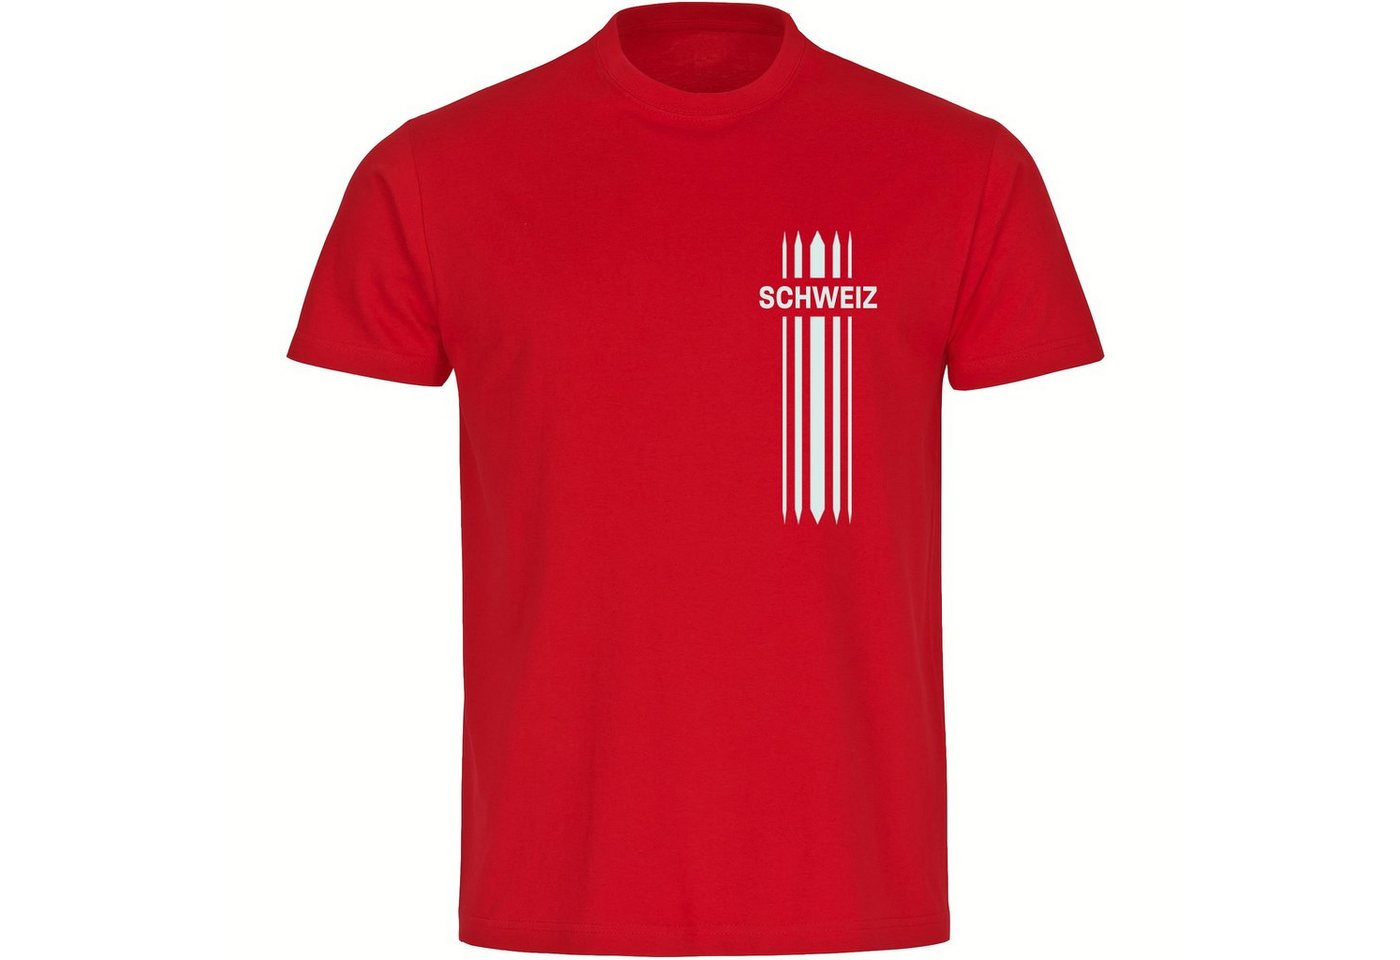 multifanshop T-Shirt Herren Schweiz - Streifen - Männer von multifanshop